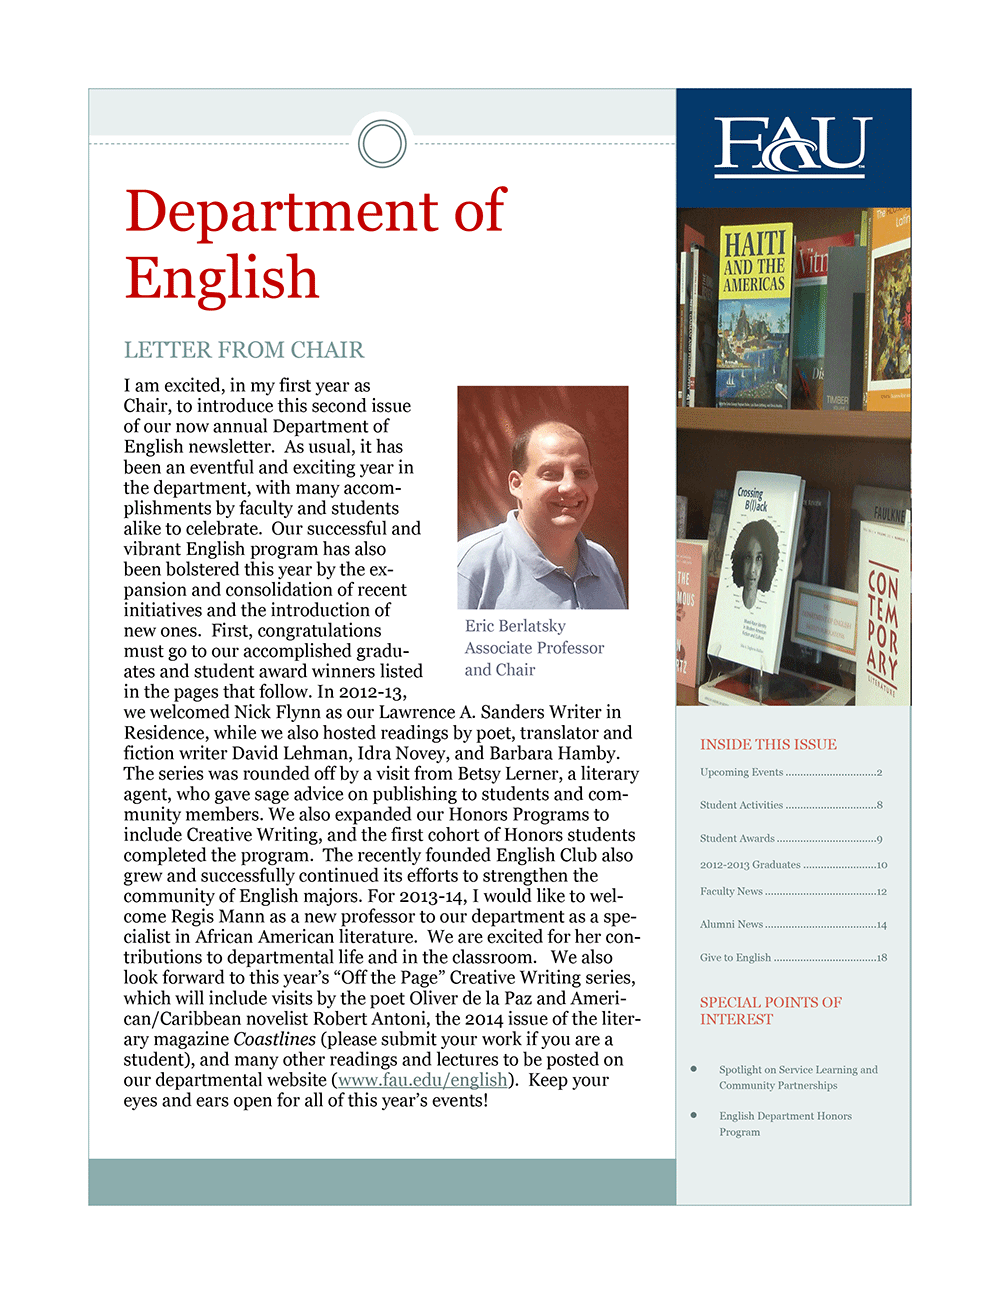 2013 English Newsletter image